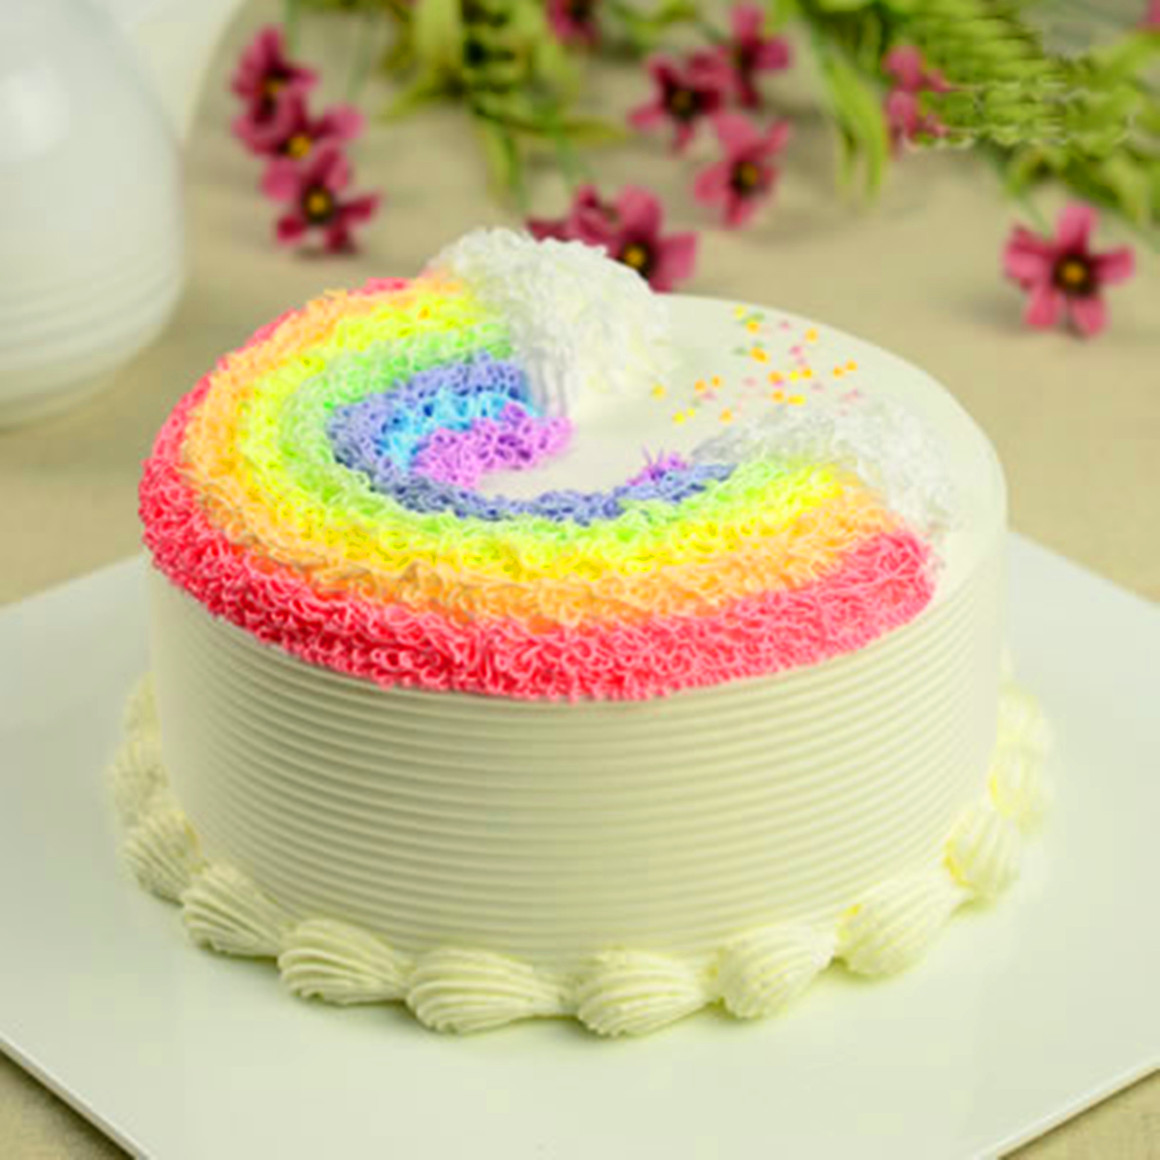 彩虹蛋糕A